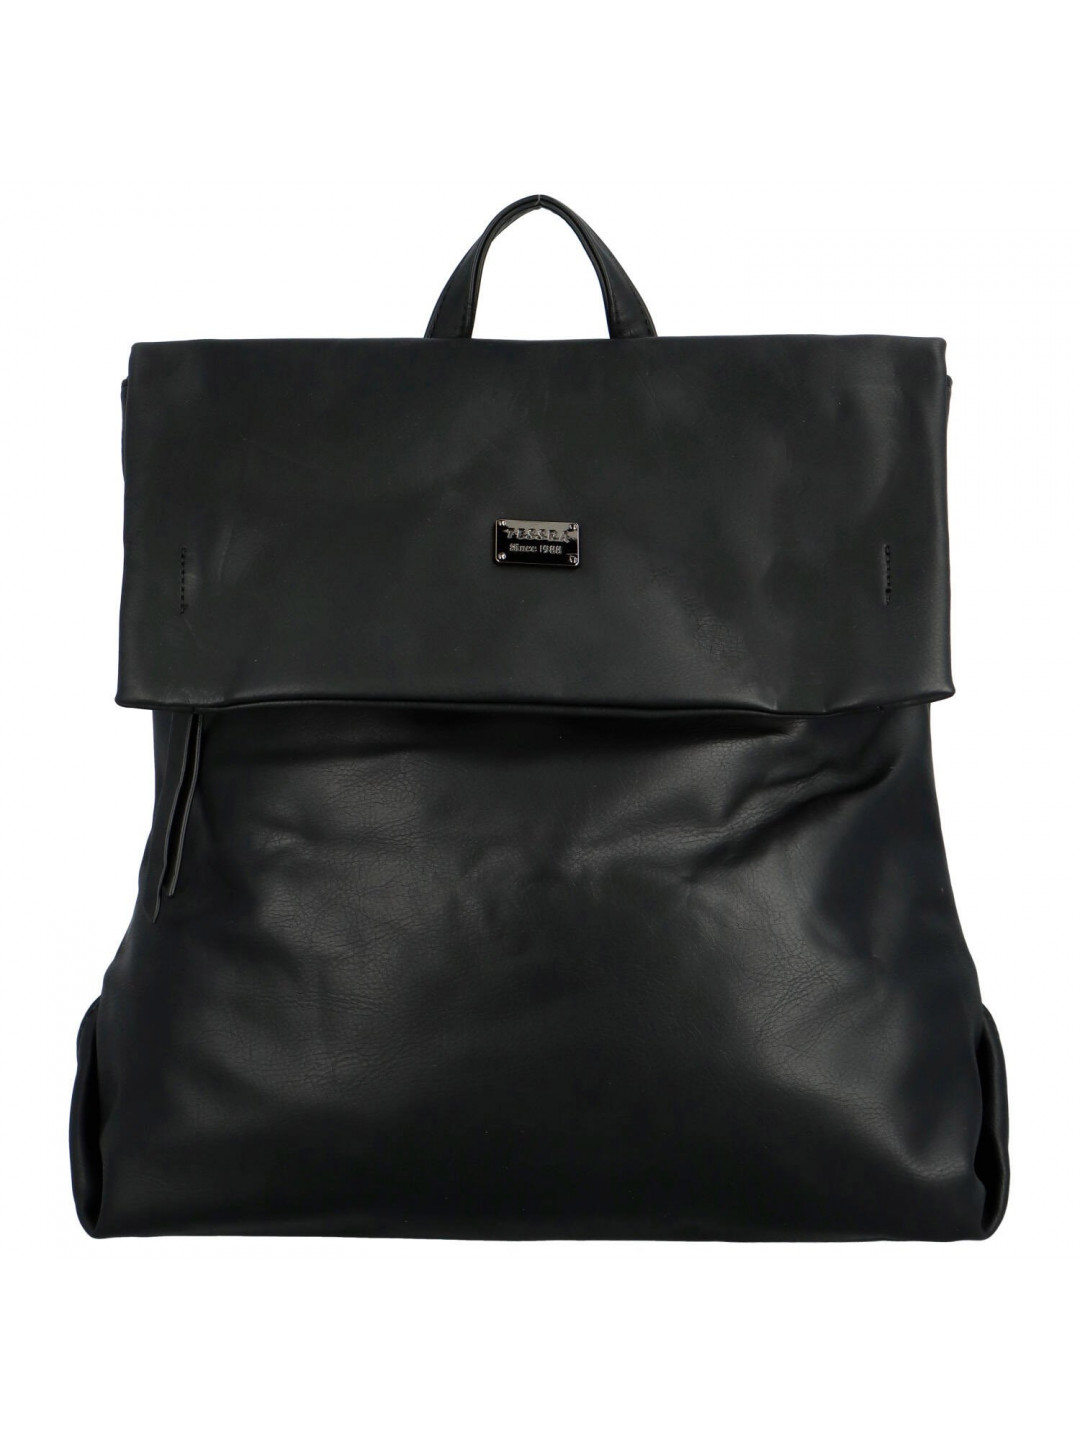 Trendy dámský kabelko-batoh Tessra Mimmia černá